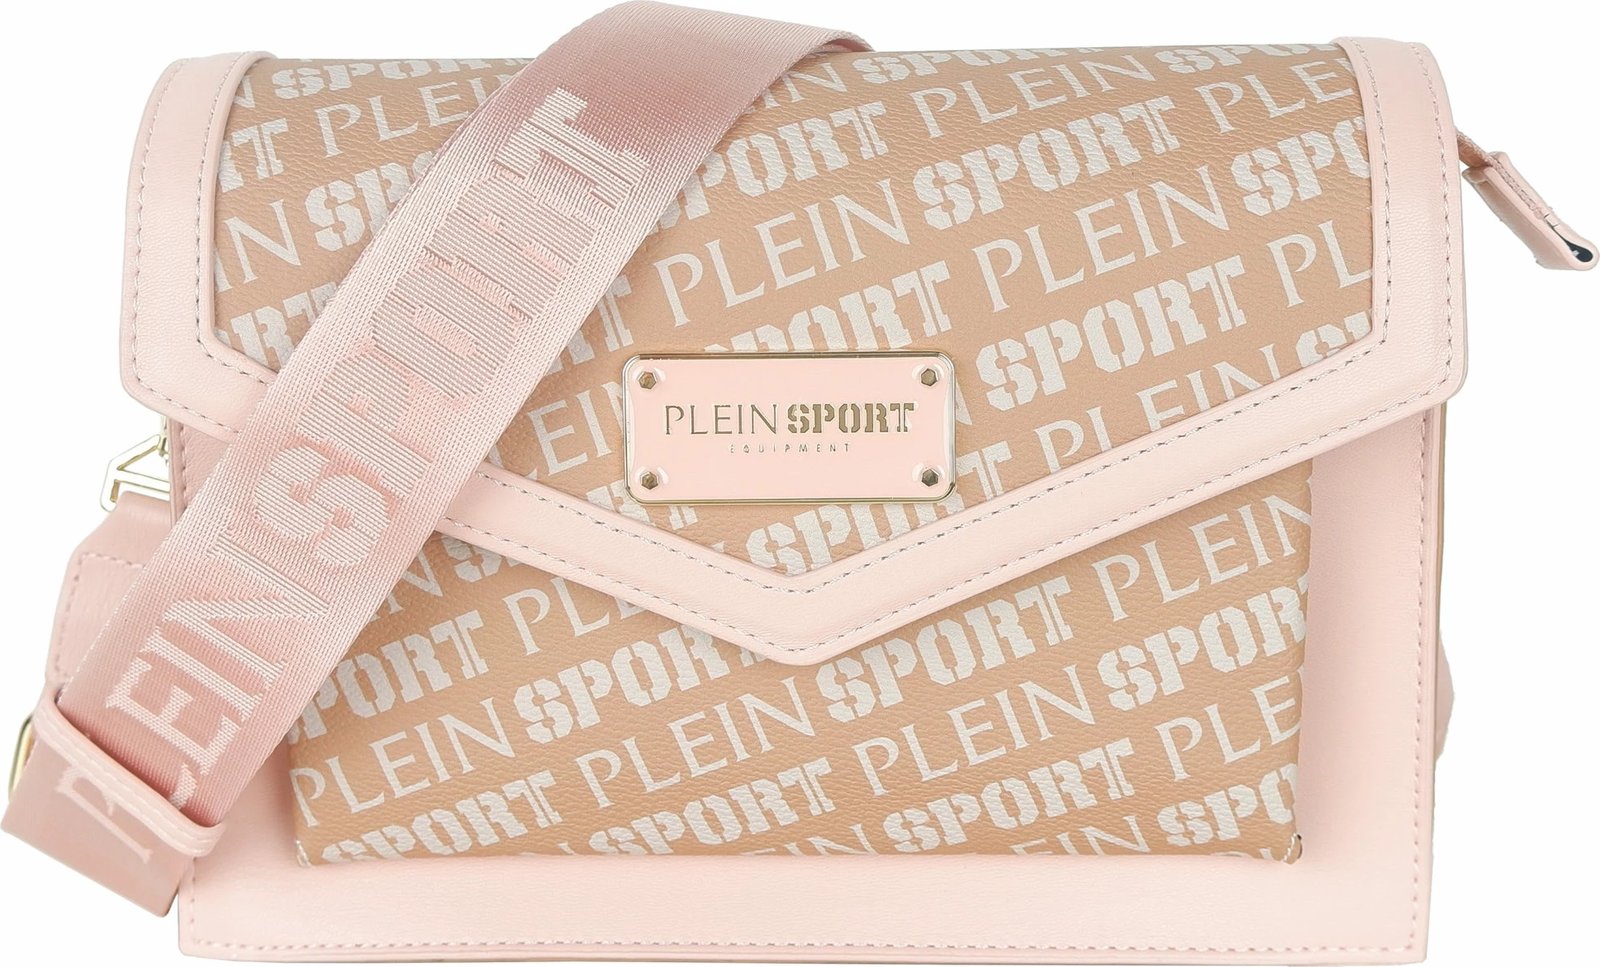 Çantë për femra Plein Sport, bezhë/rozë